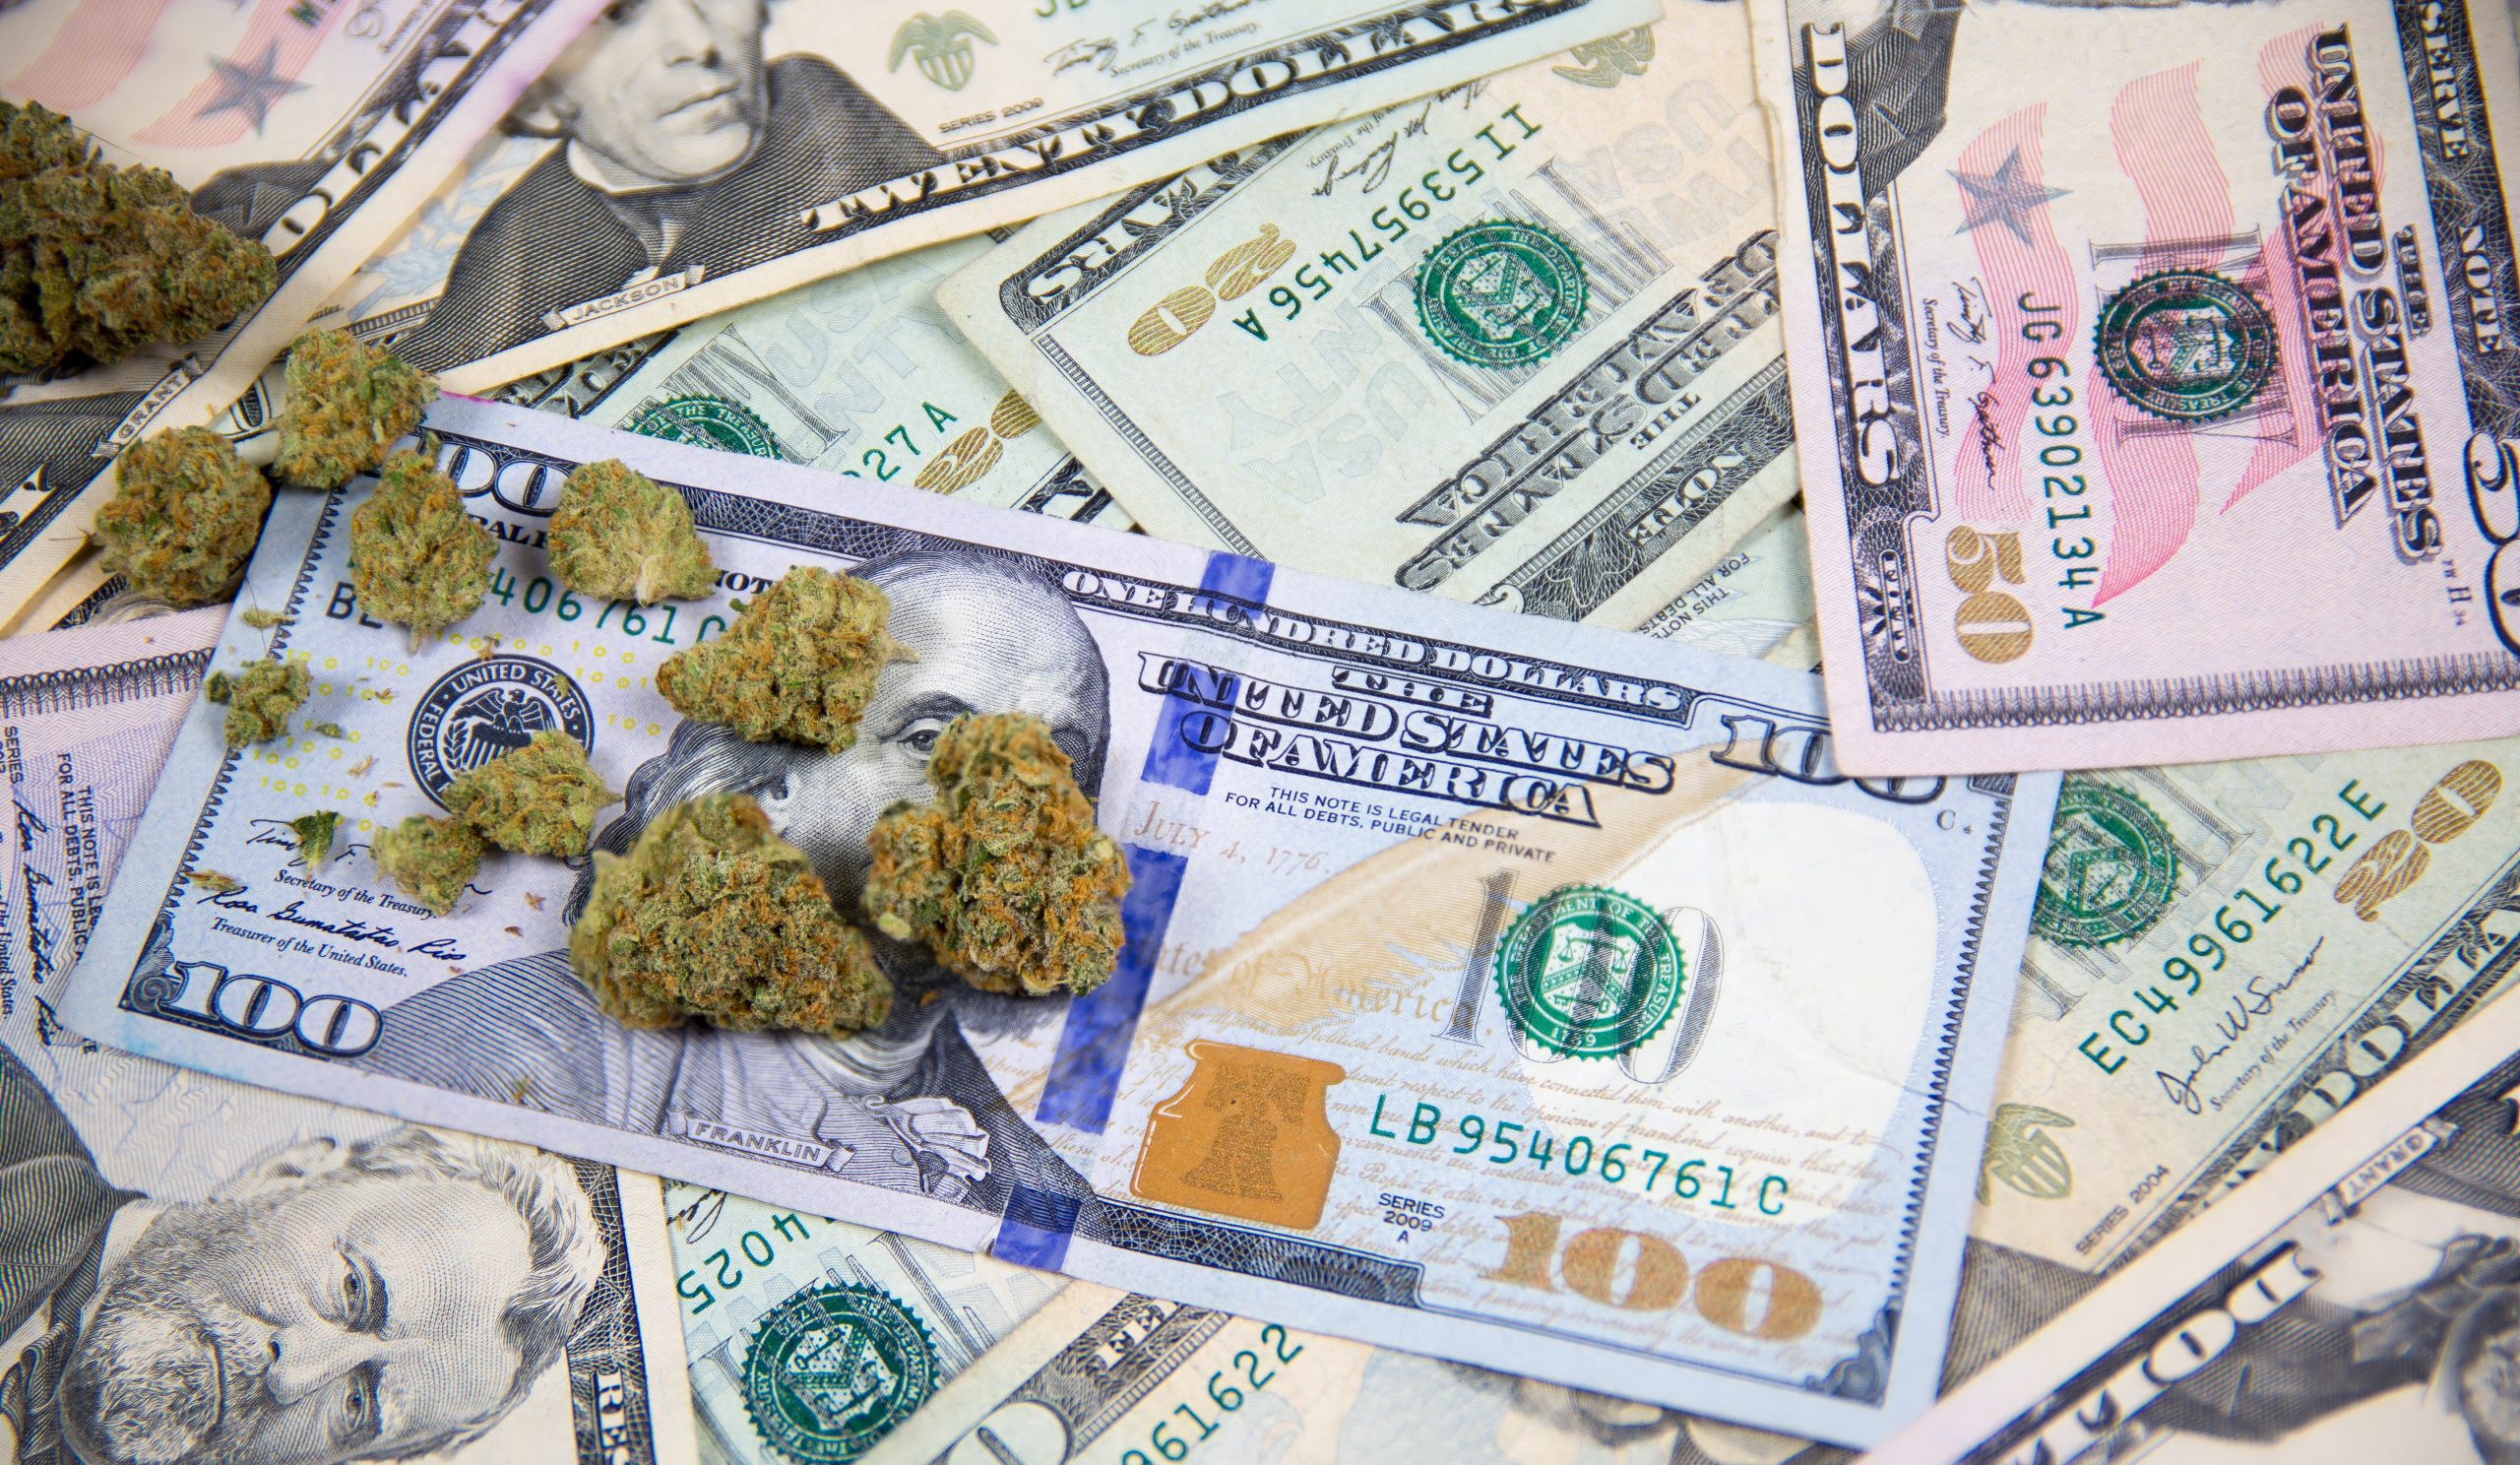 marijuana tax revenue